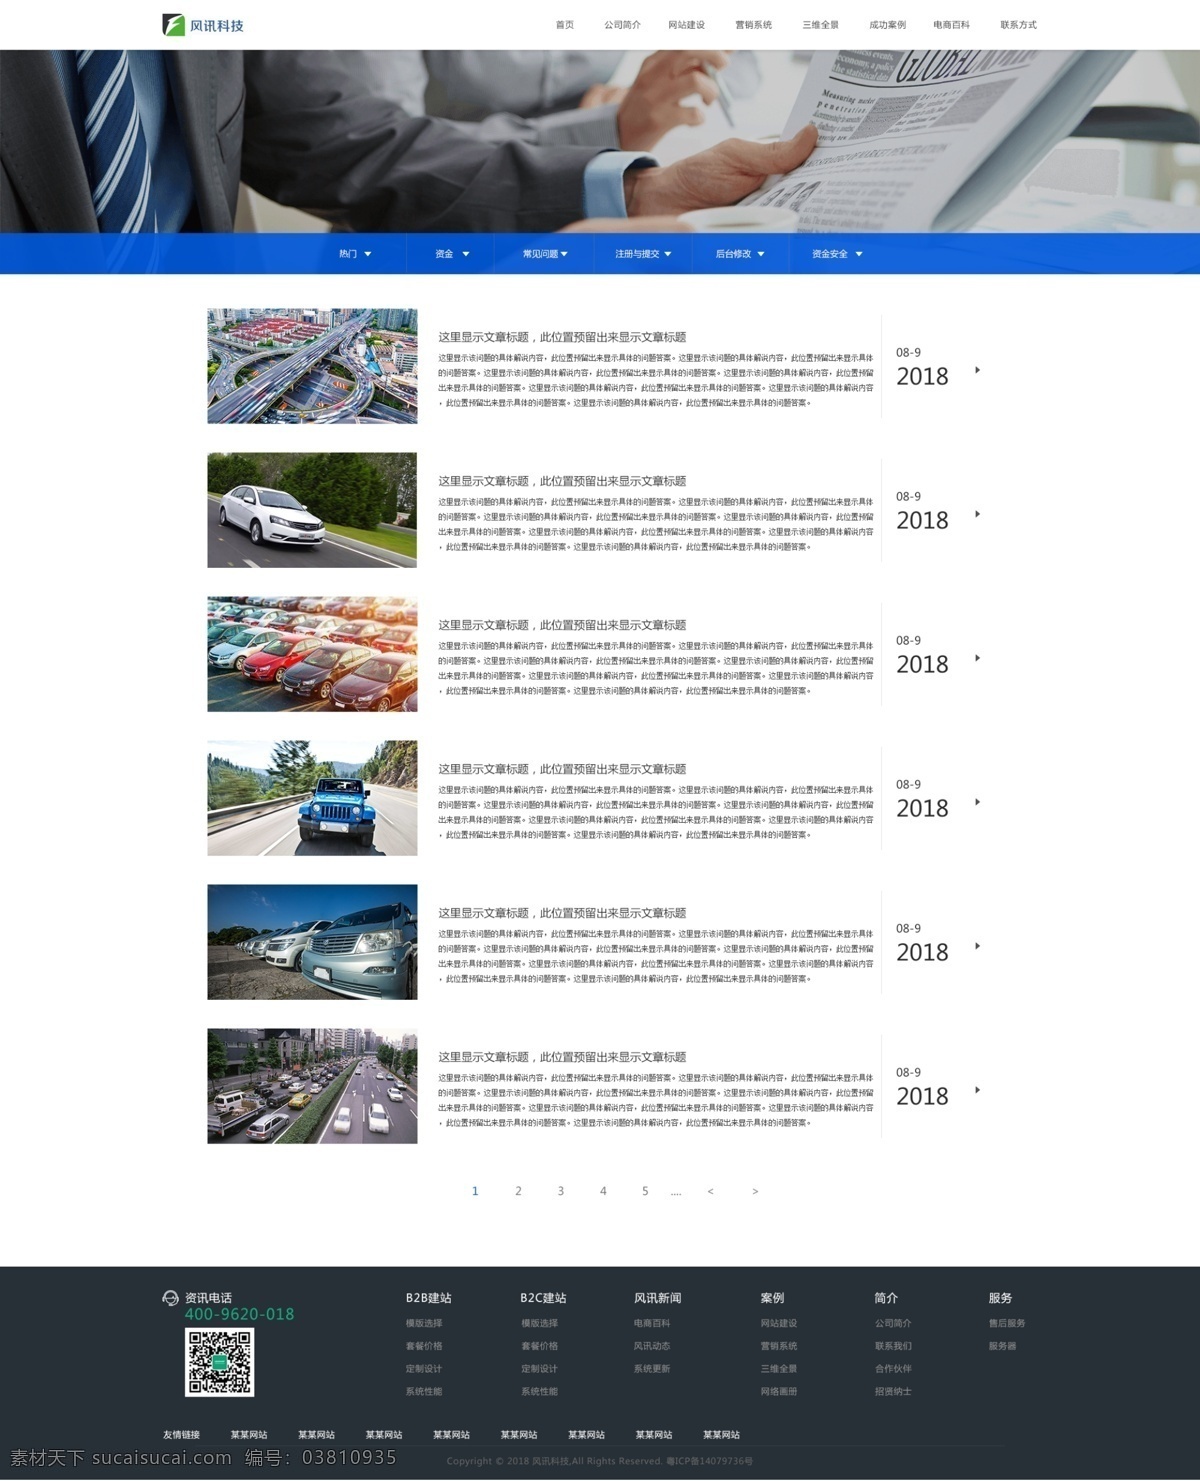 媒体报道 列表 页 网页设计 列表页 新闻 关于我们 动态新闻 科技公司 ui设计 web 界面设计 中文模板